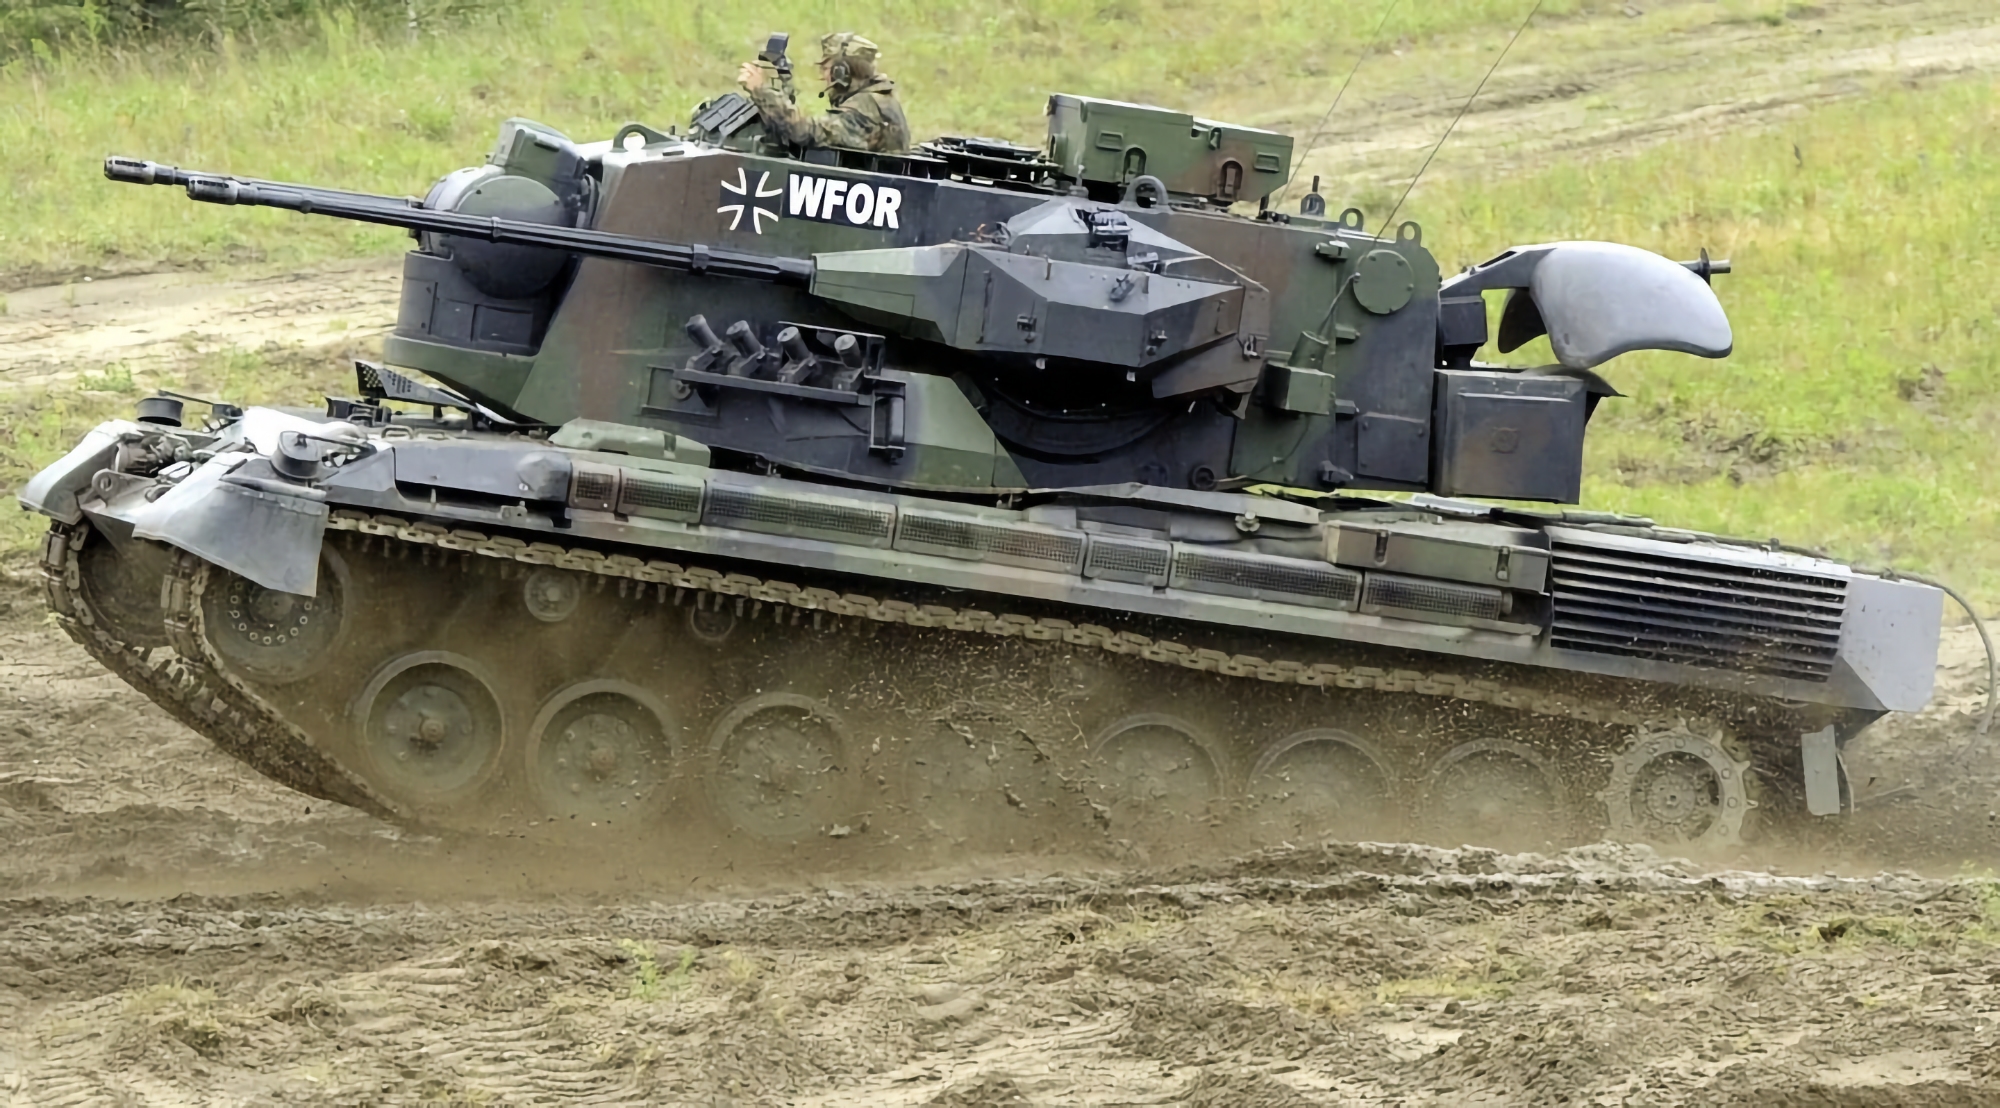 Gepard självgående luftvärnssystem, ammunition till Leopard 2A6 stridsvagnar och UAV:er: Tyskland ger Ukraina nytt vapenpaket